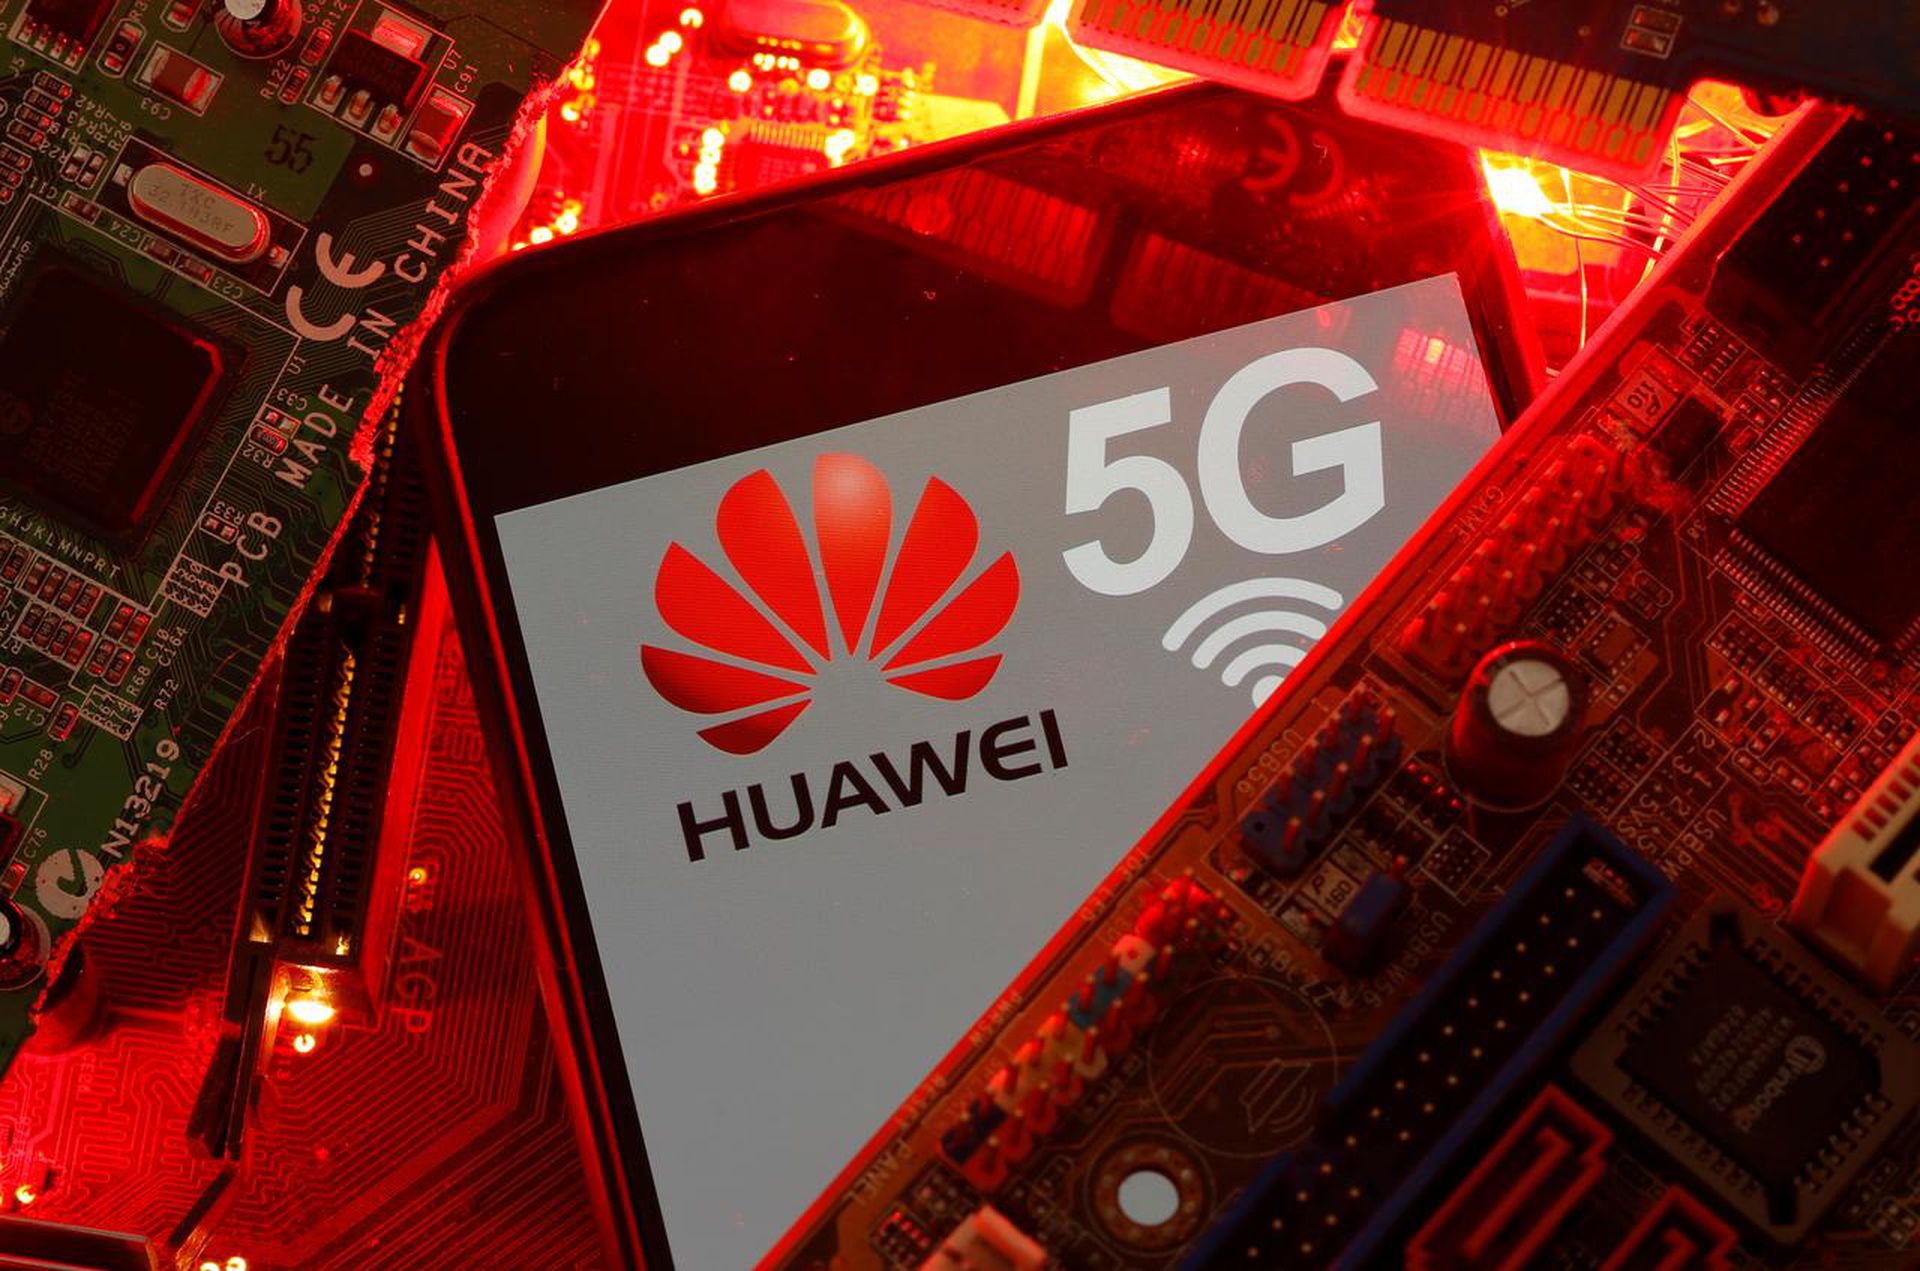 所谓的“干净电信公司”实际上就是排除华为、中兴等中国5G设备制造商参与其5G网络建设的电信公司。（Reuters）